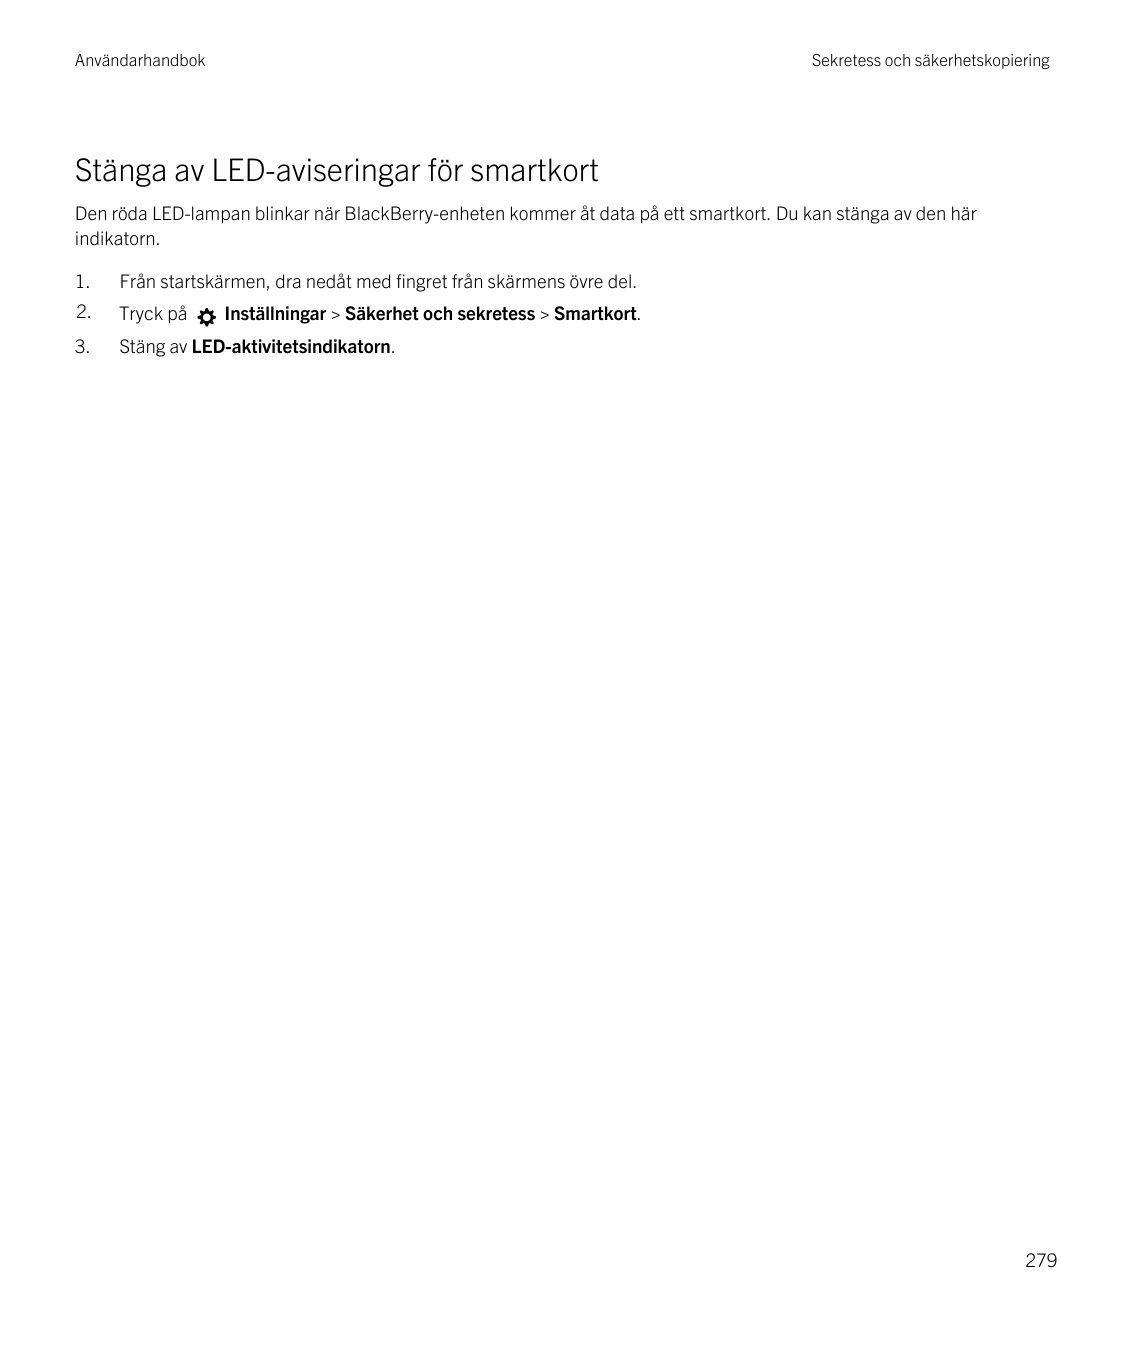 AnvändarhandbokSekretess och säkerhetskopieringStänga av LED-aviseringar för smartkortDen röda LED-lampan blinkar när BlackBerry